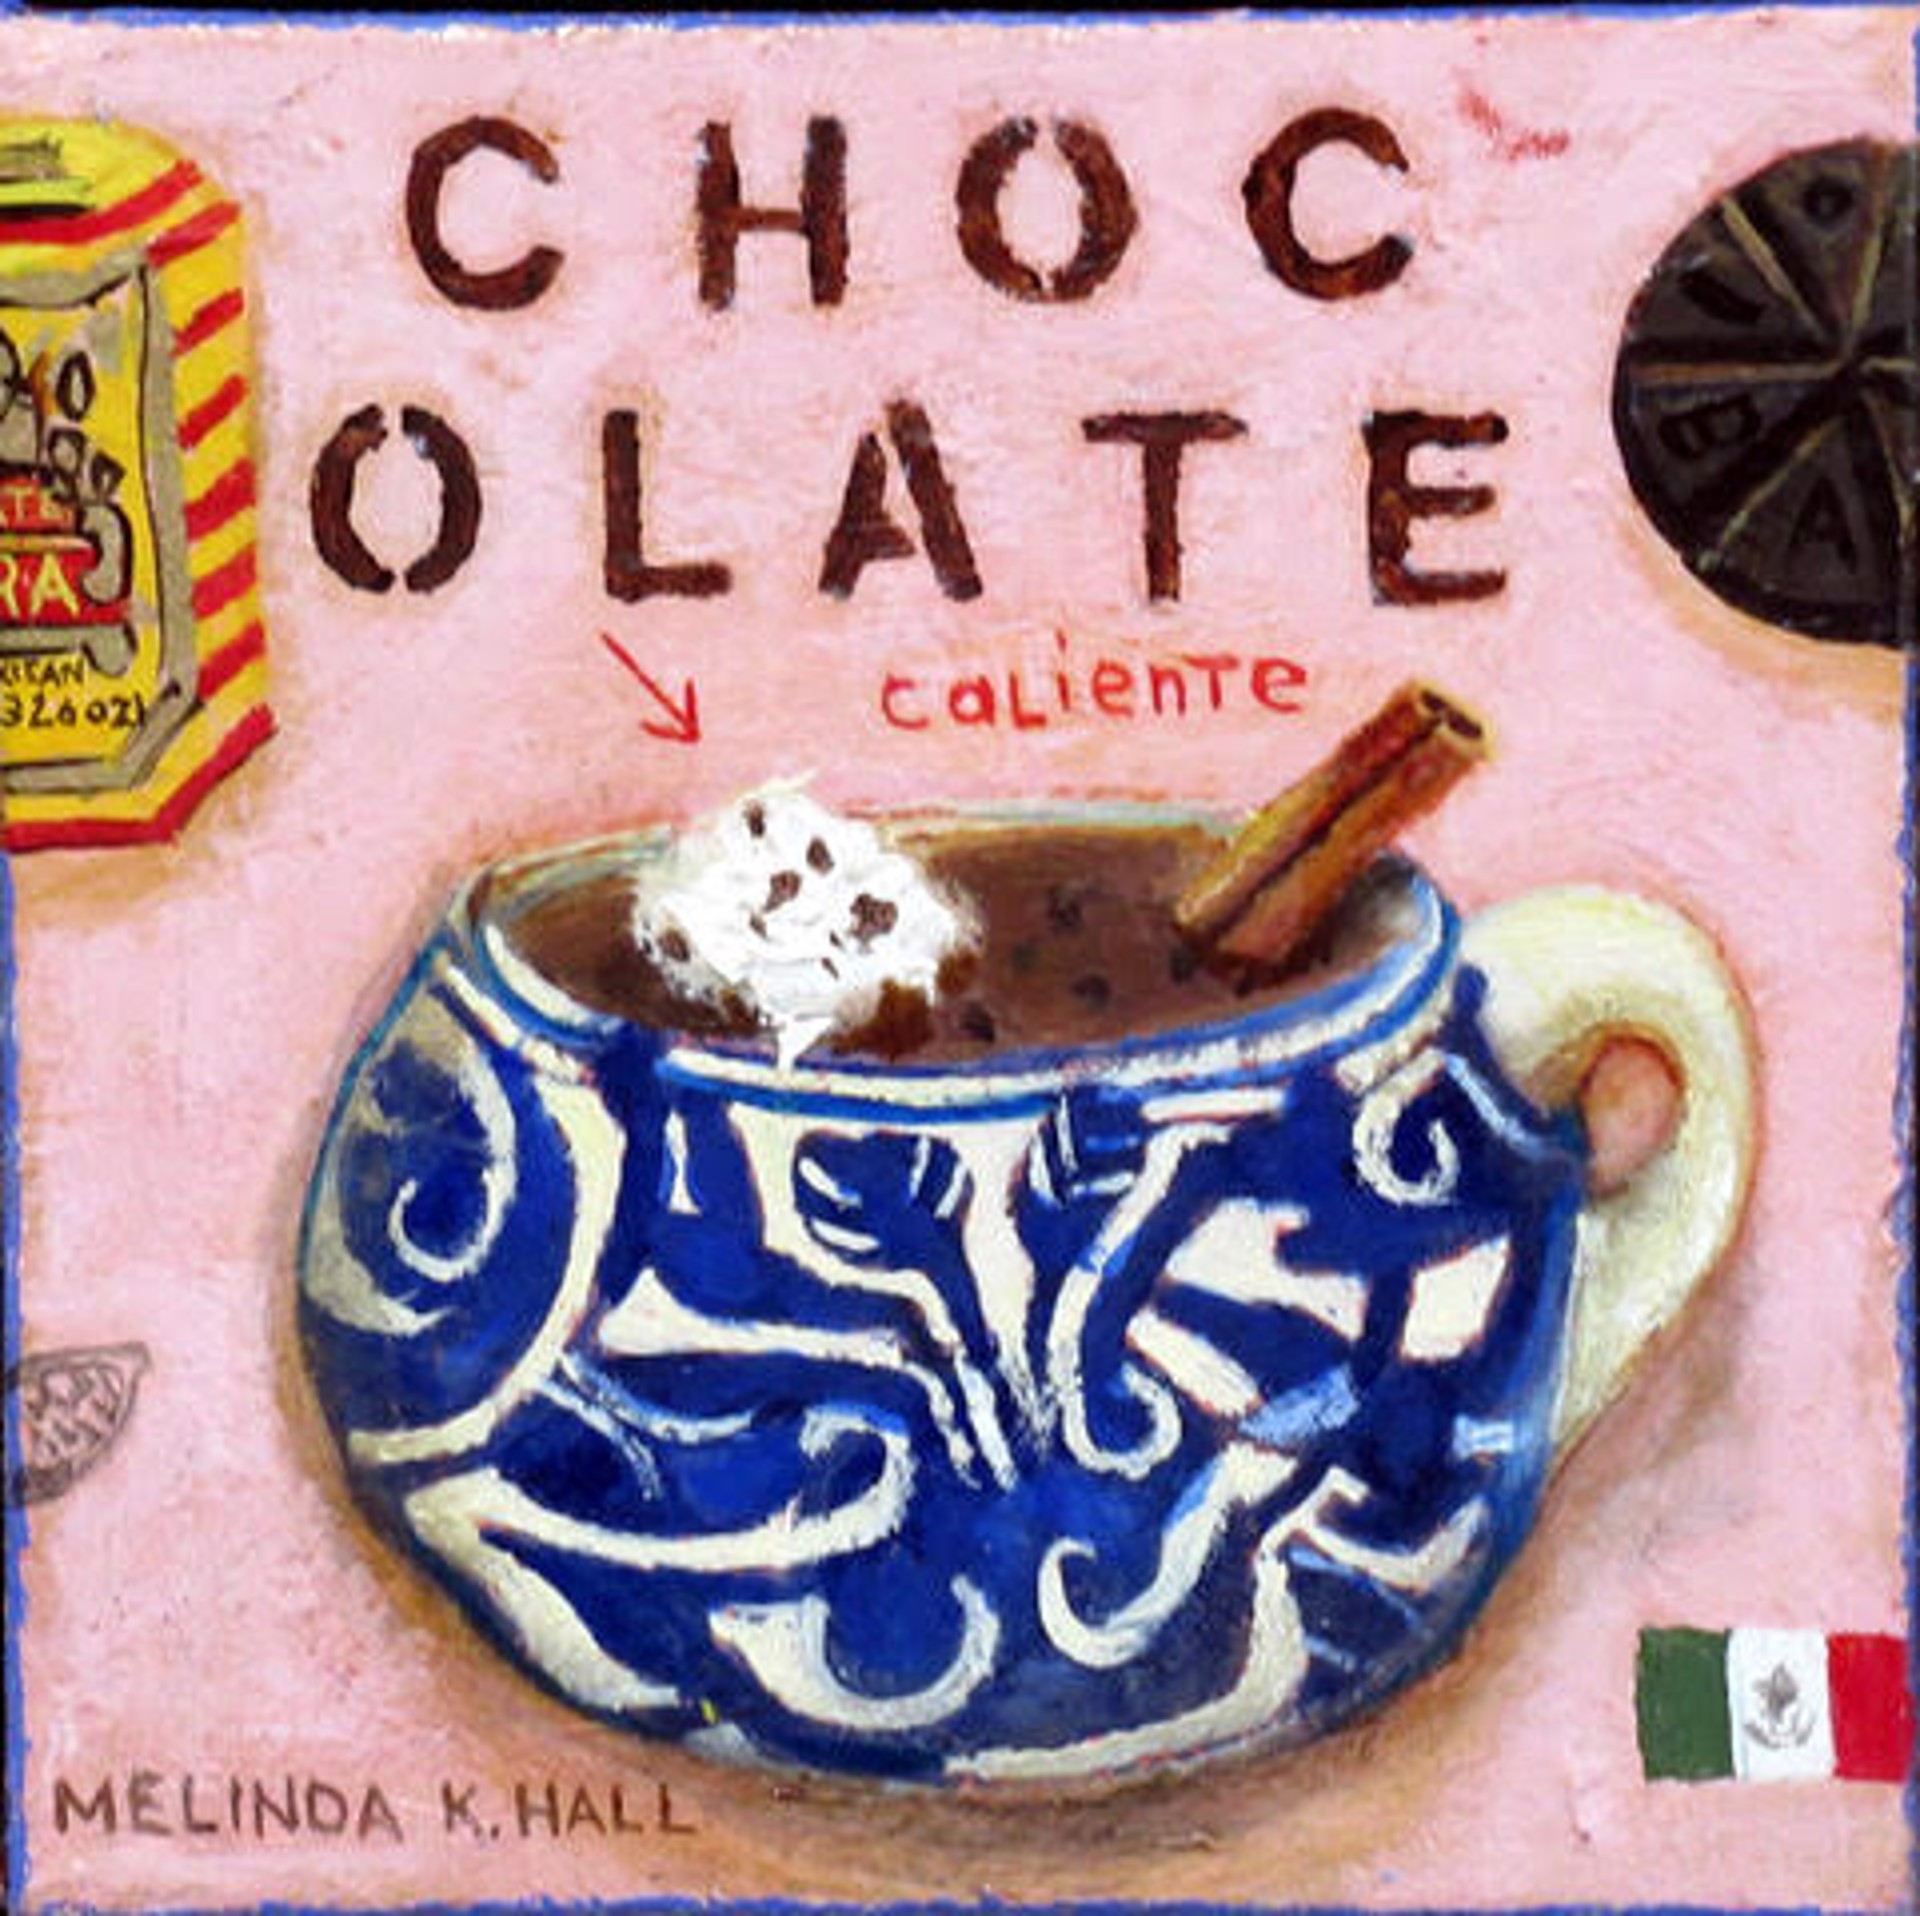 Chocolate Caliente by Melinda K. Hall